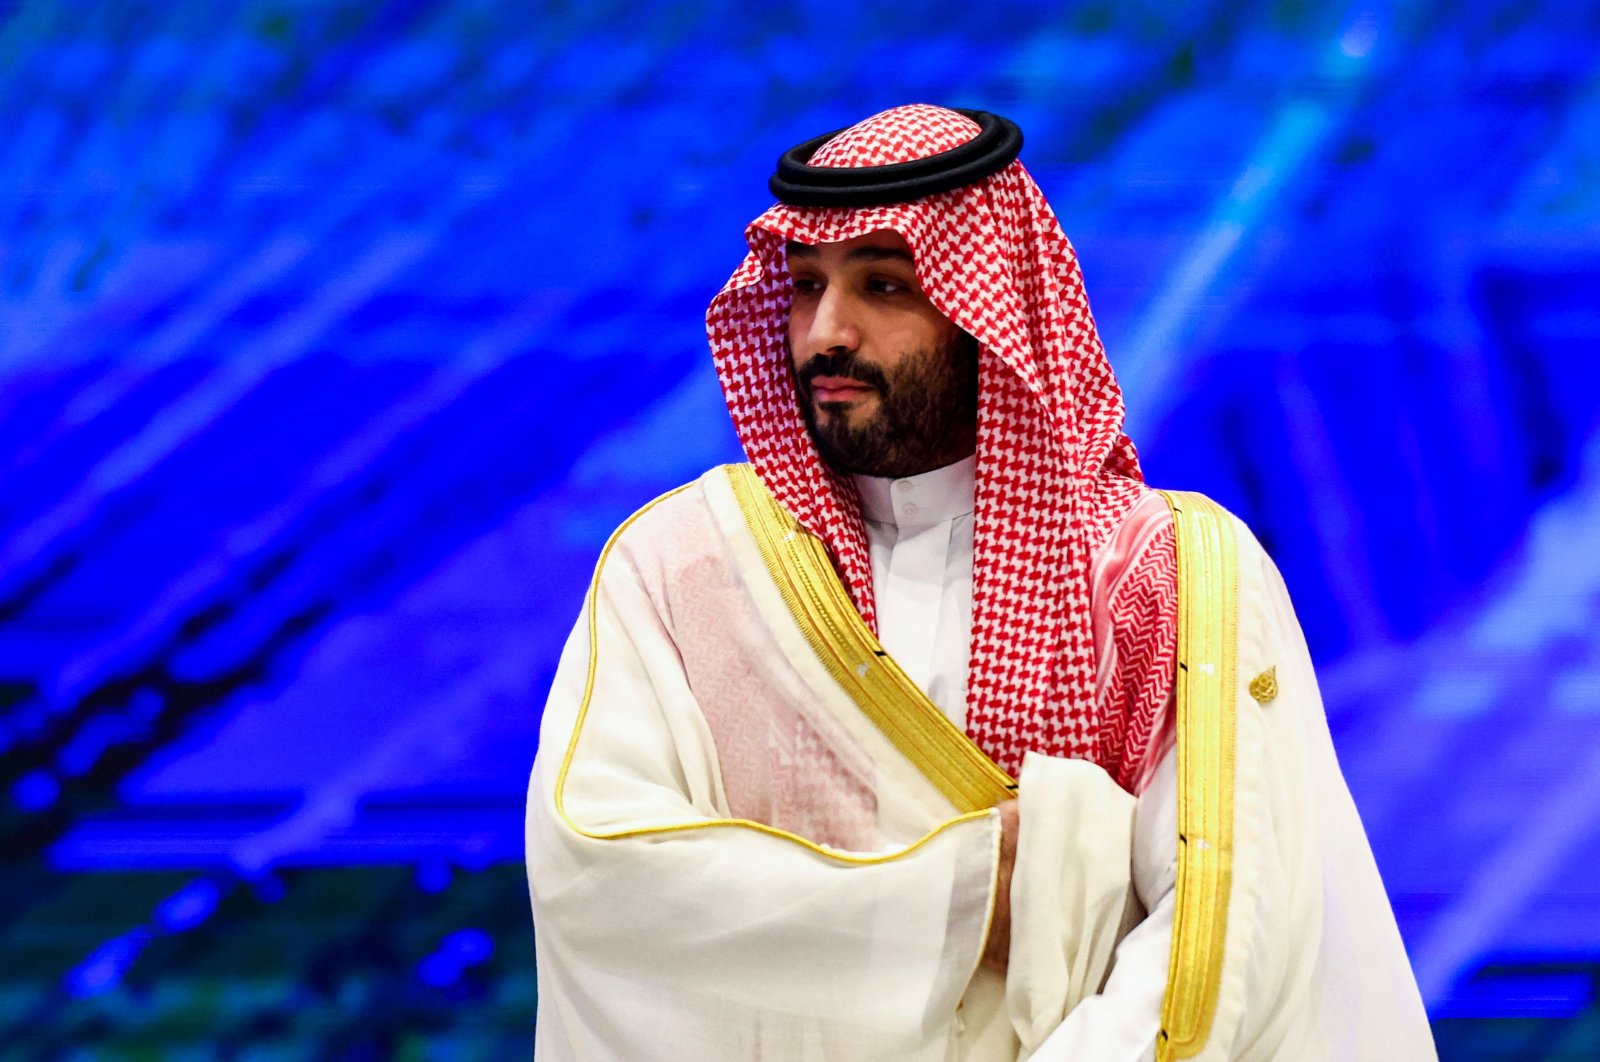 Putra mahkota Saudi memiliki kekebalan dalam gugatan Khashoggi, kata pemerintah AS